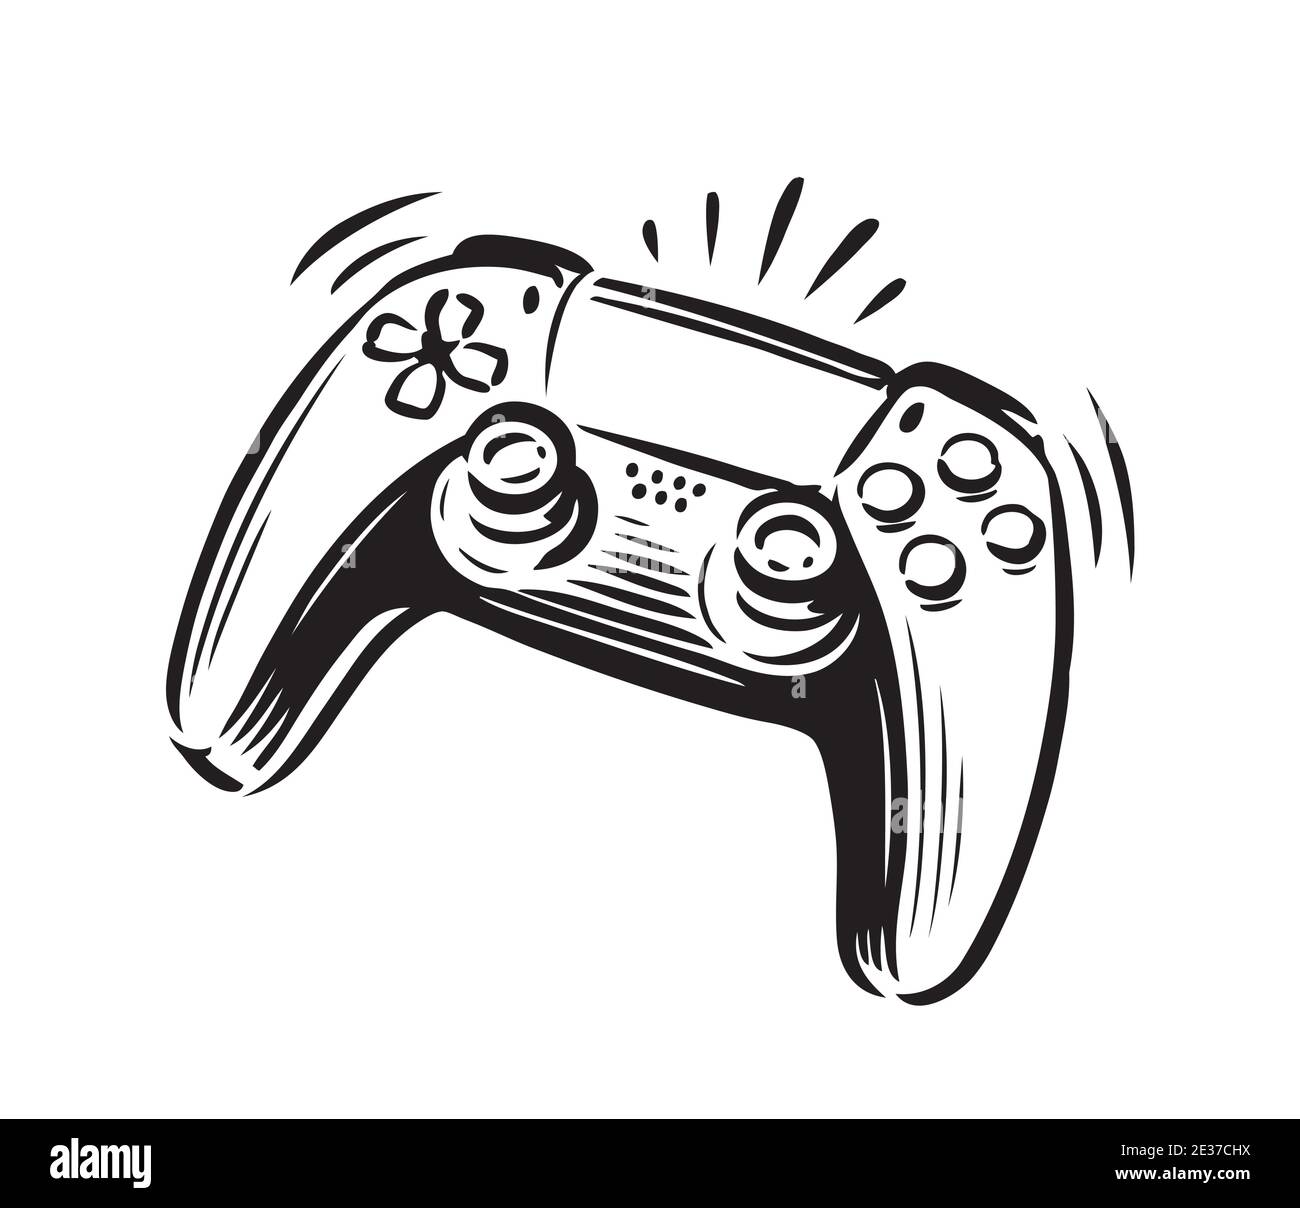 Simbolo del controller di gioco. Illustrazione vettoriale del joystick Illustrazione Vettoriale